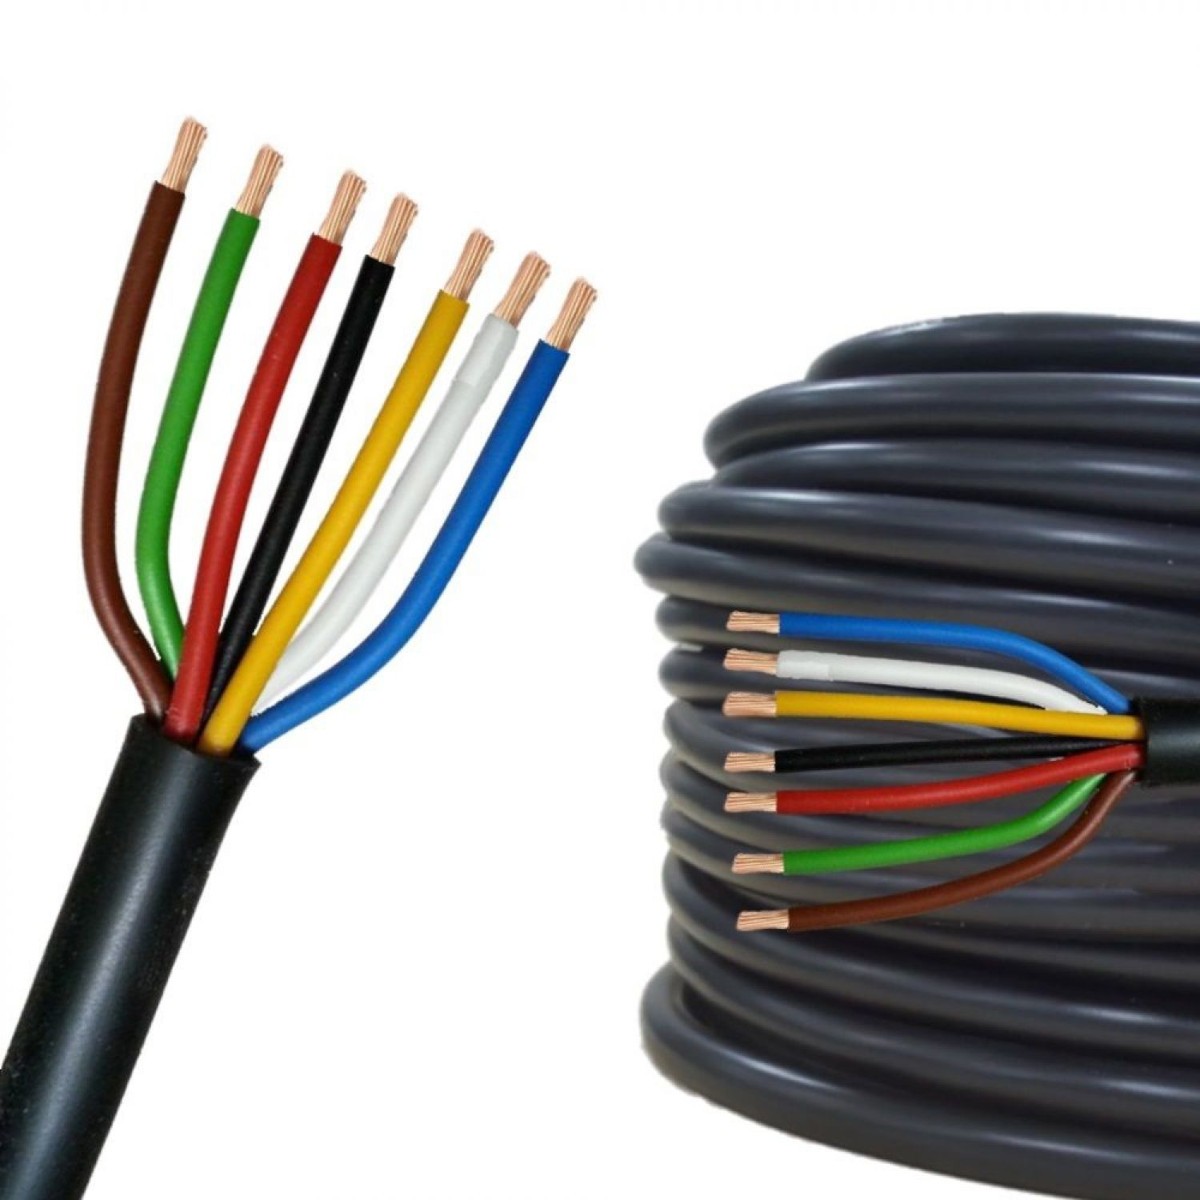 Зачем нужна цветовая маркировка проводов и кабелей